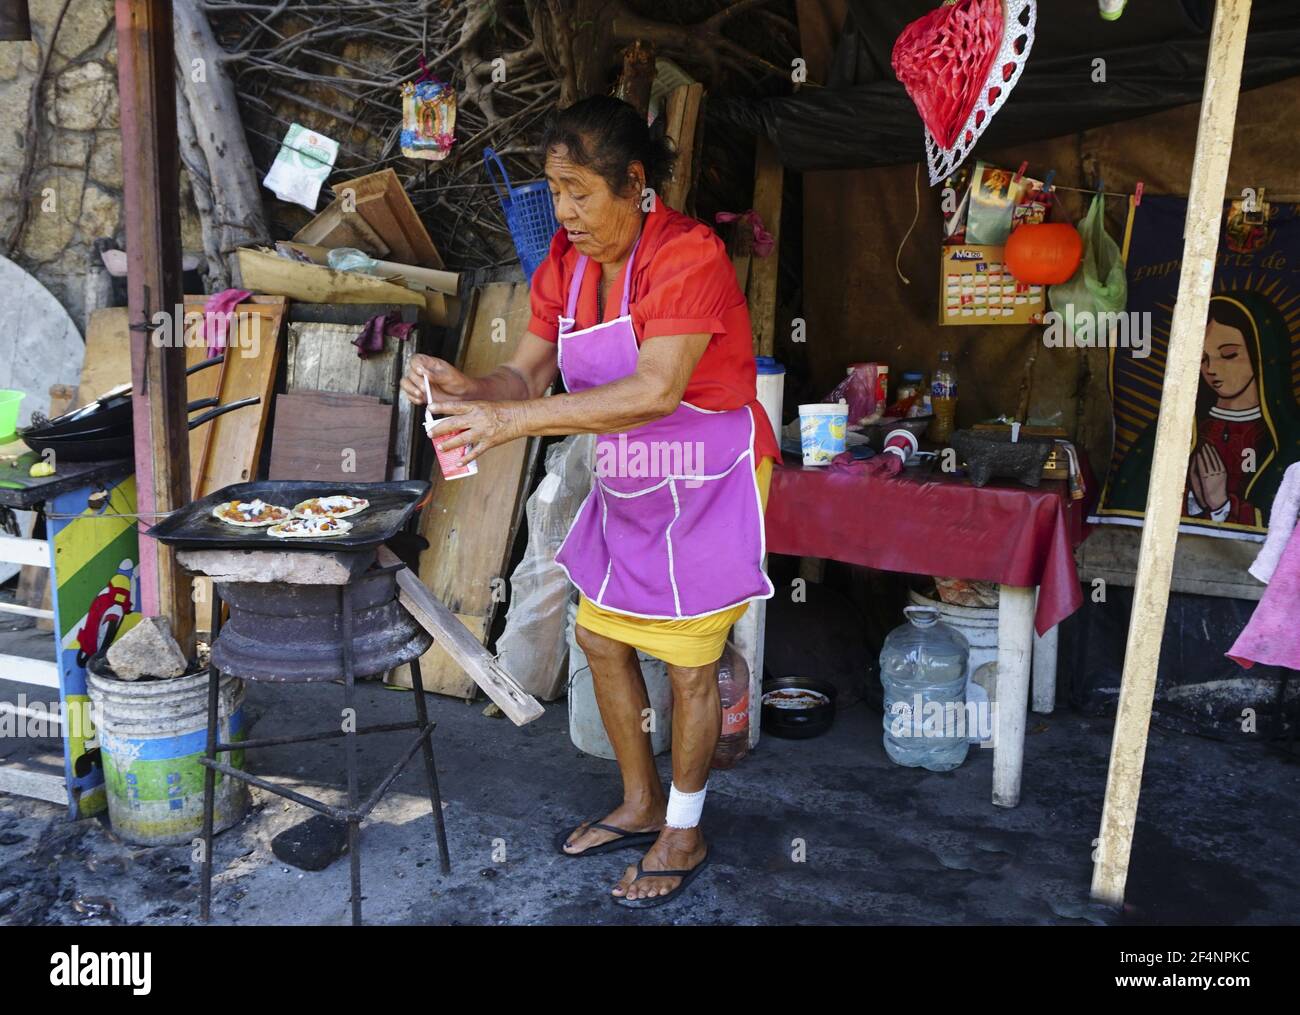 Vendeur de rue hispanique féminin faisant des sopes à Acapulco, Mexique. Banque D'Images